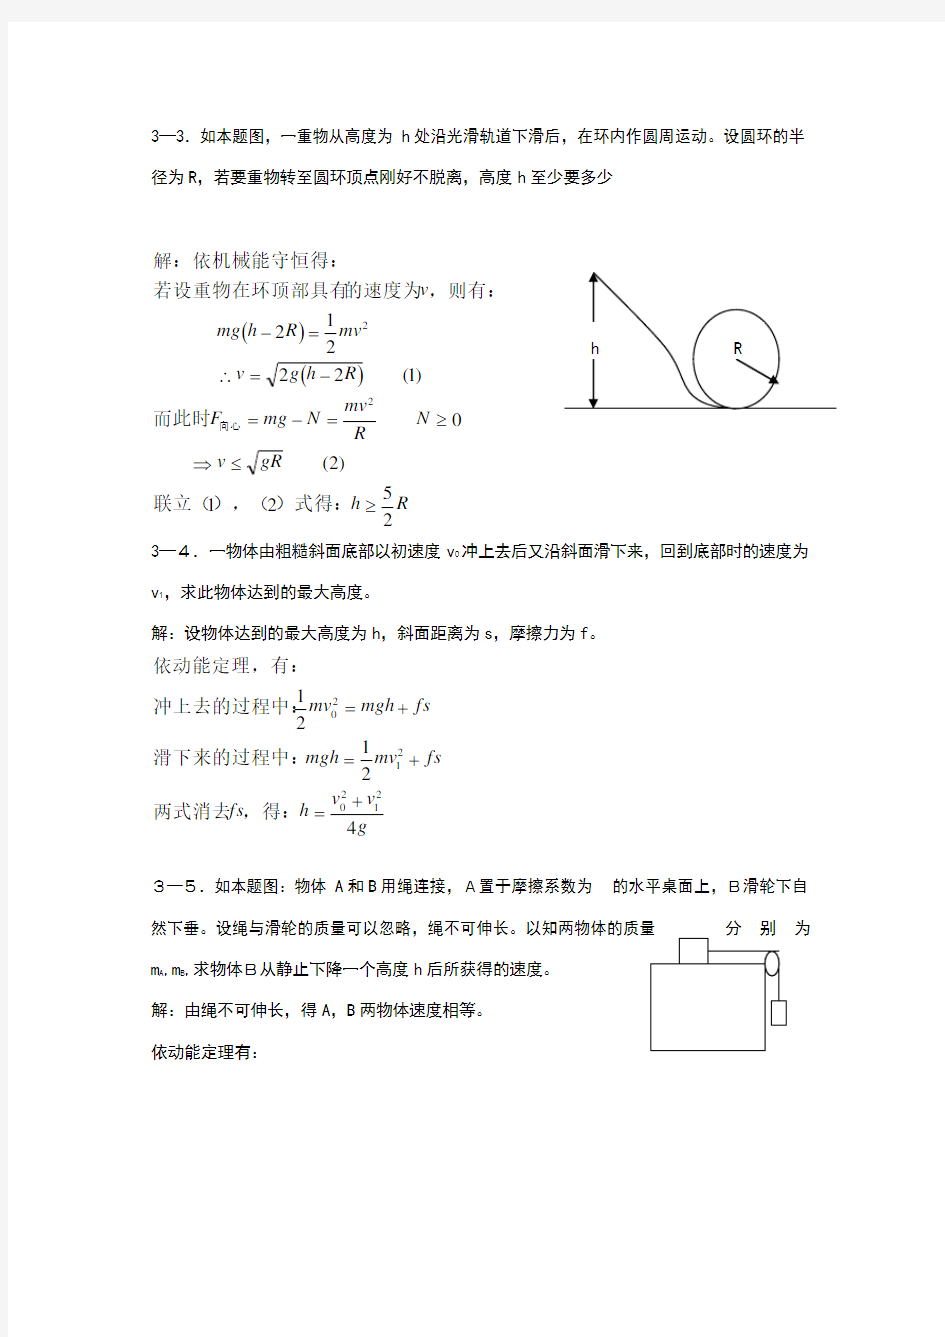 新概念物理教程力学答案详解(三)27